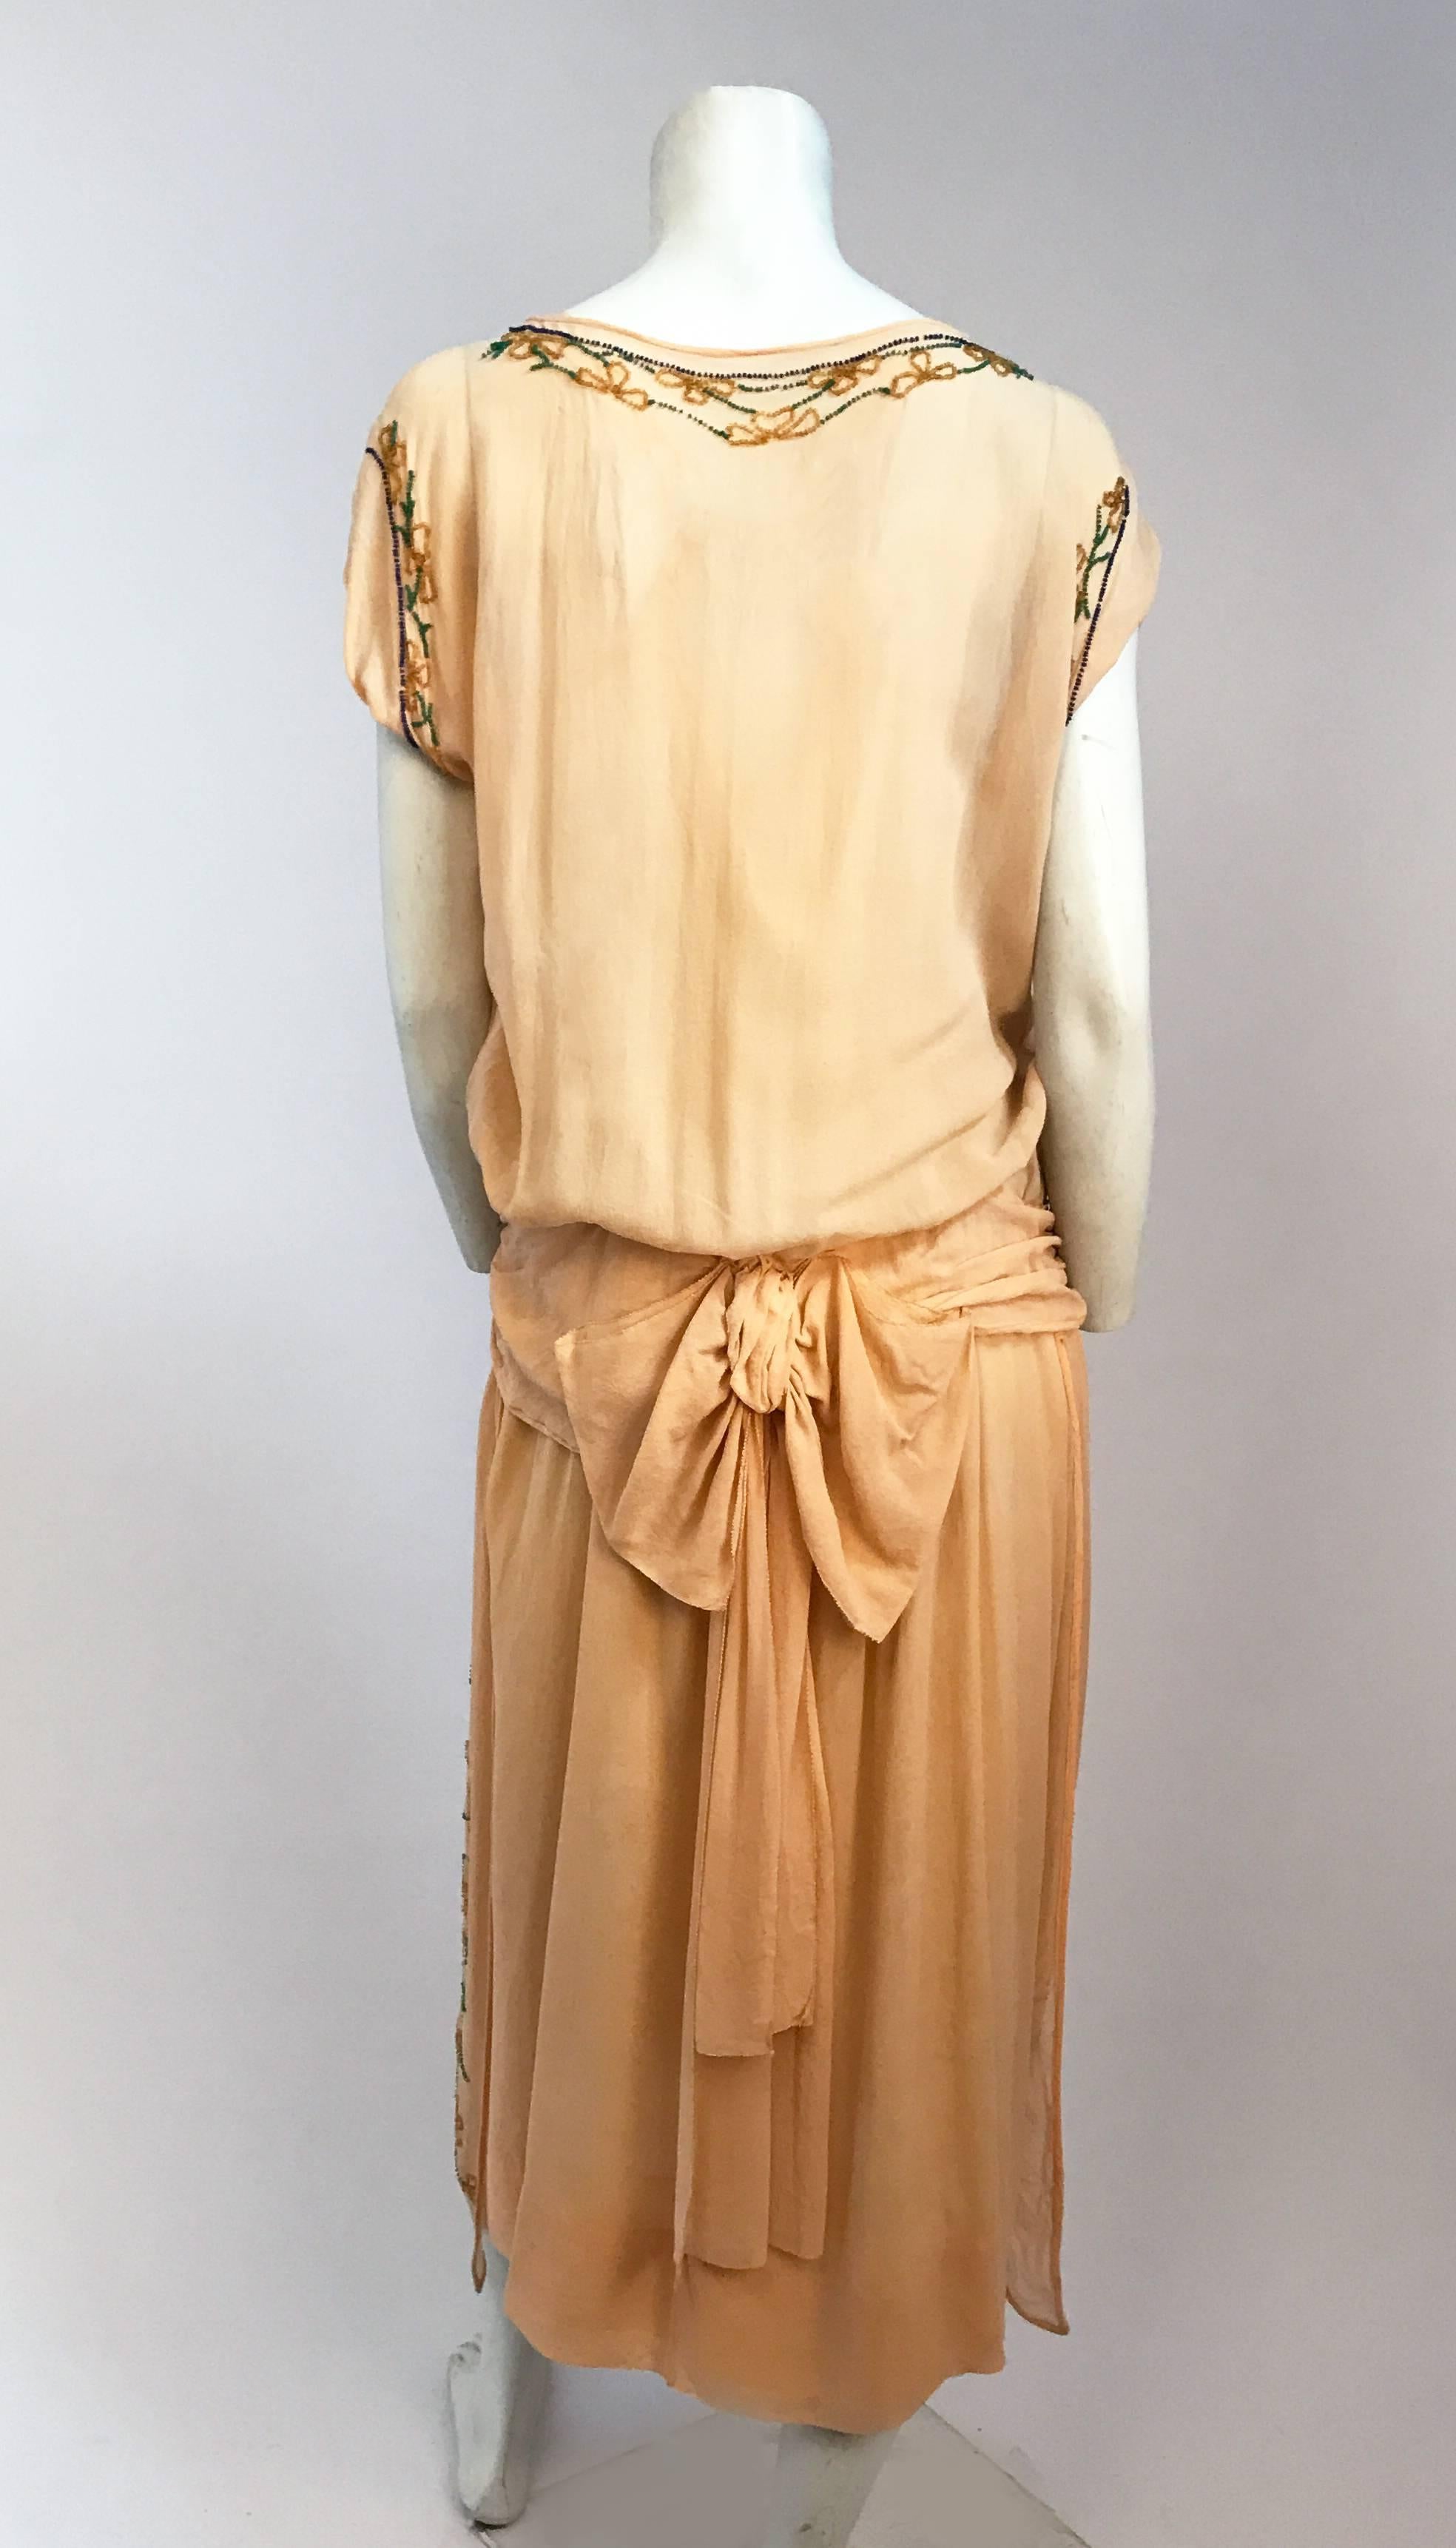 dropped waist dress 1920s